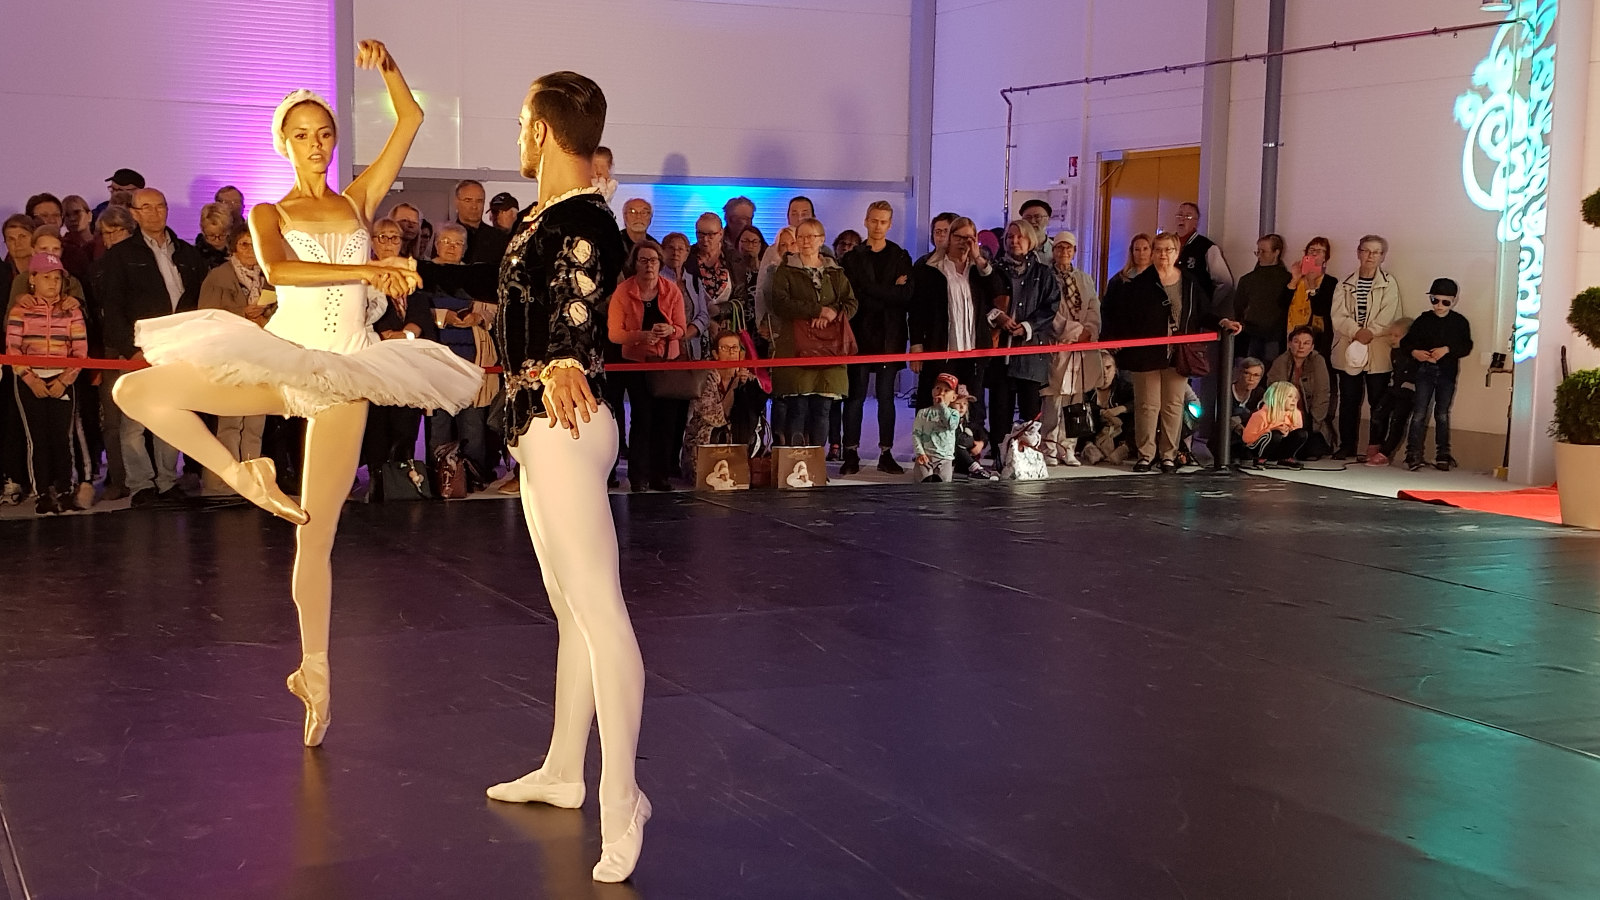 Kuva on Kaakon Kamarimusiikin balettiosuudesta. Kuvassa on Valeria Quintana valkoisessa joutsenpuvussa ja oikea jalka 45 asteen kulmassa.  Hänen vierellään on Alfio Drago mustassa puserossa ja valkoisissa sukkahousuissa.  Taustalla näkyy yleisöä. 